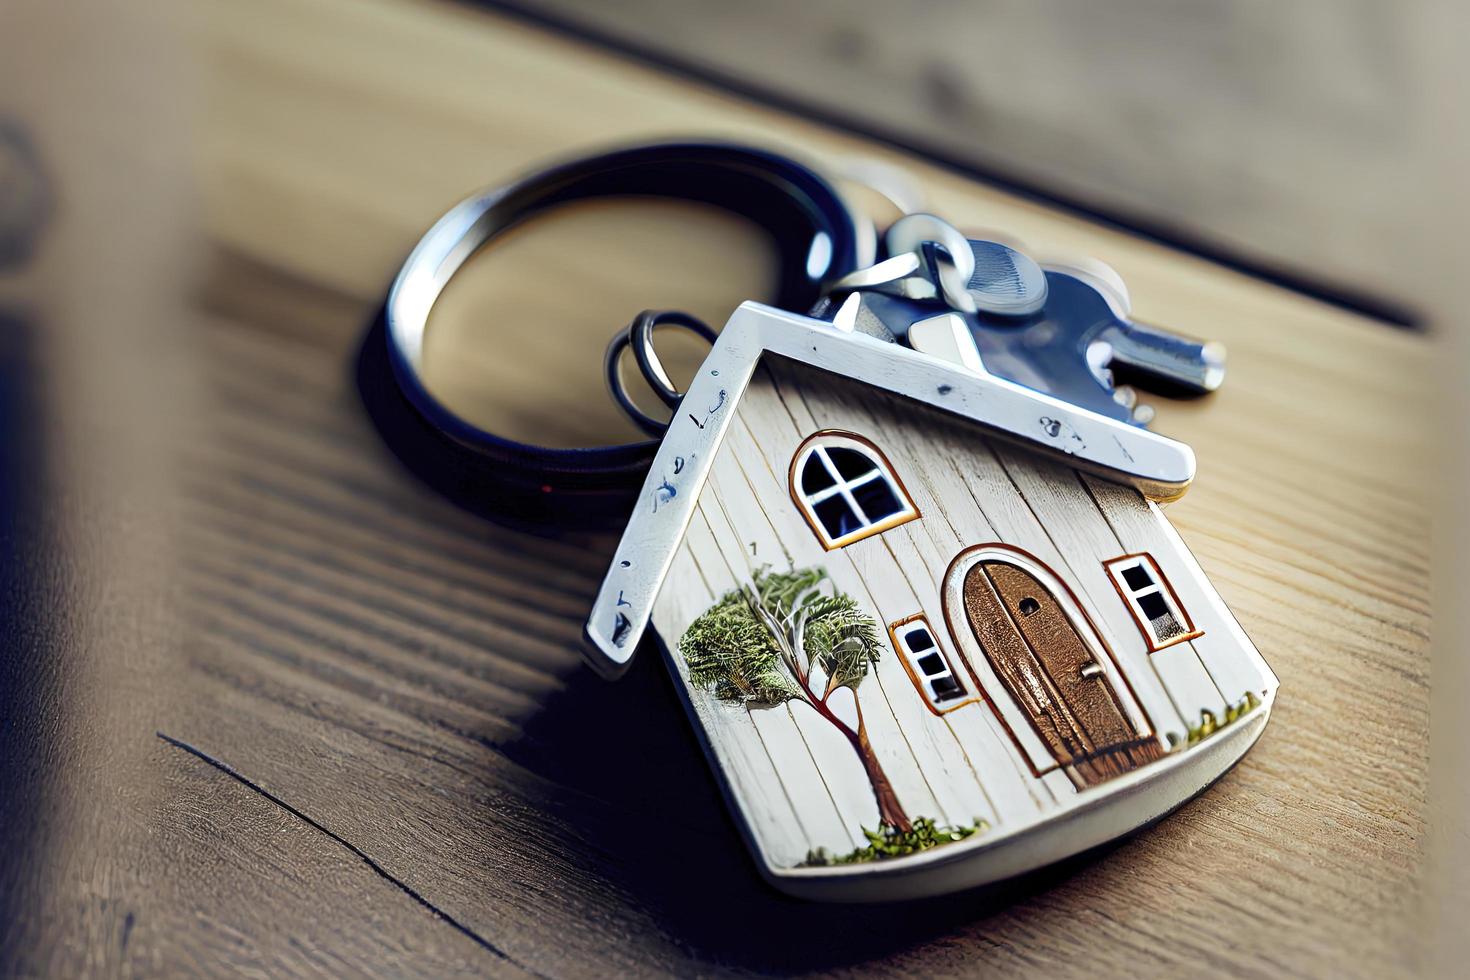 concept immobilier - porte-clés et clés sur fond de bois blanc photo